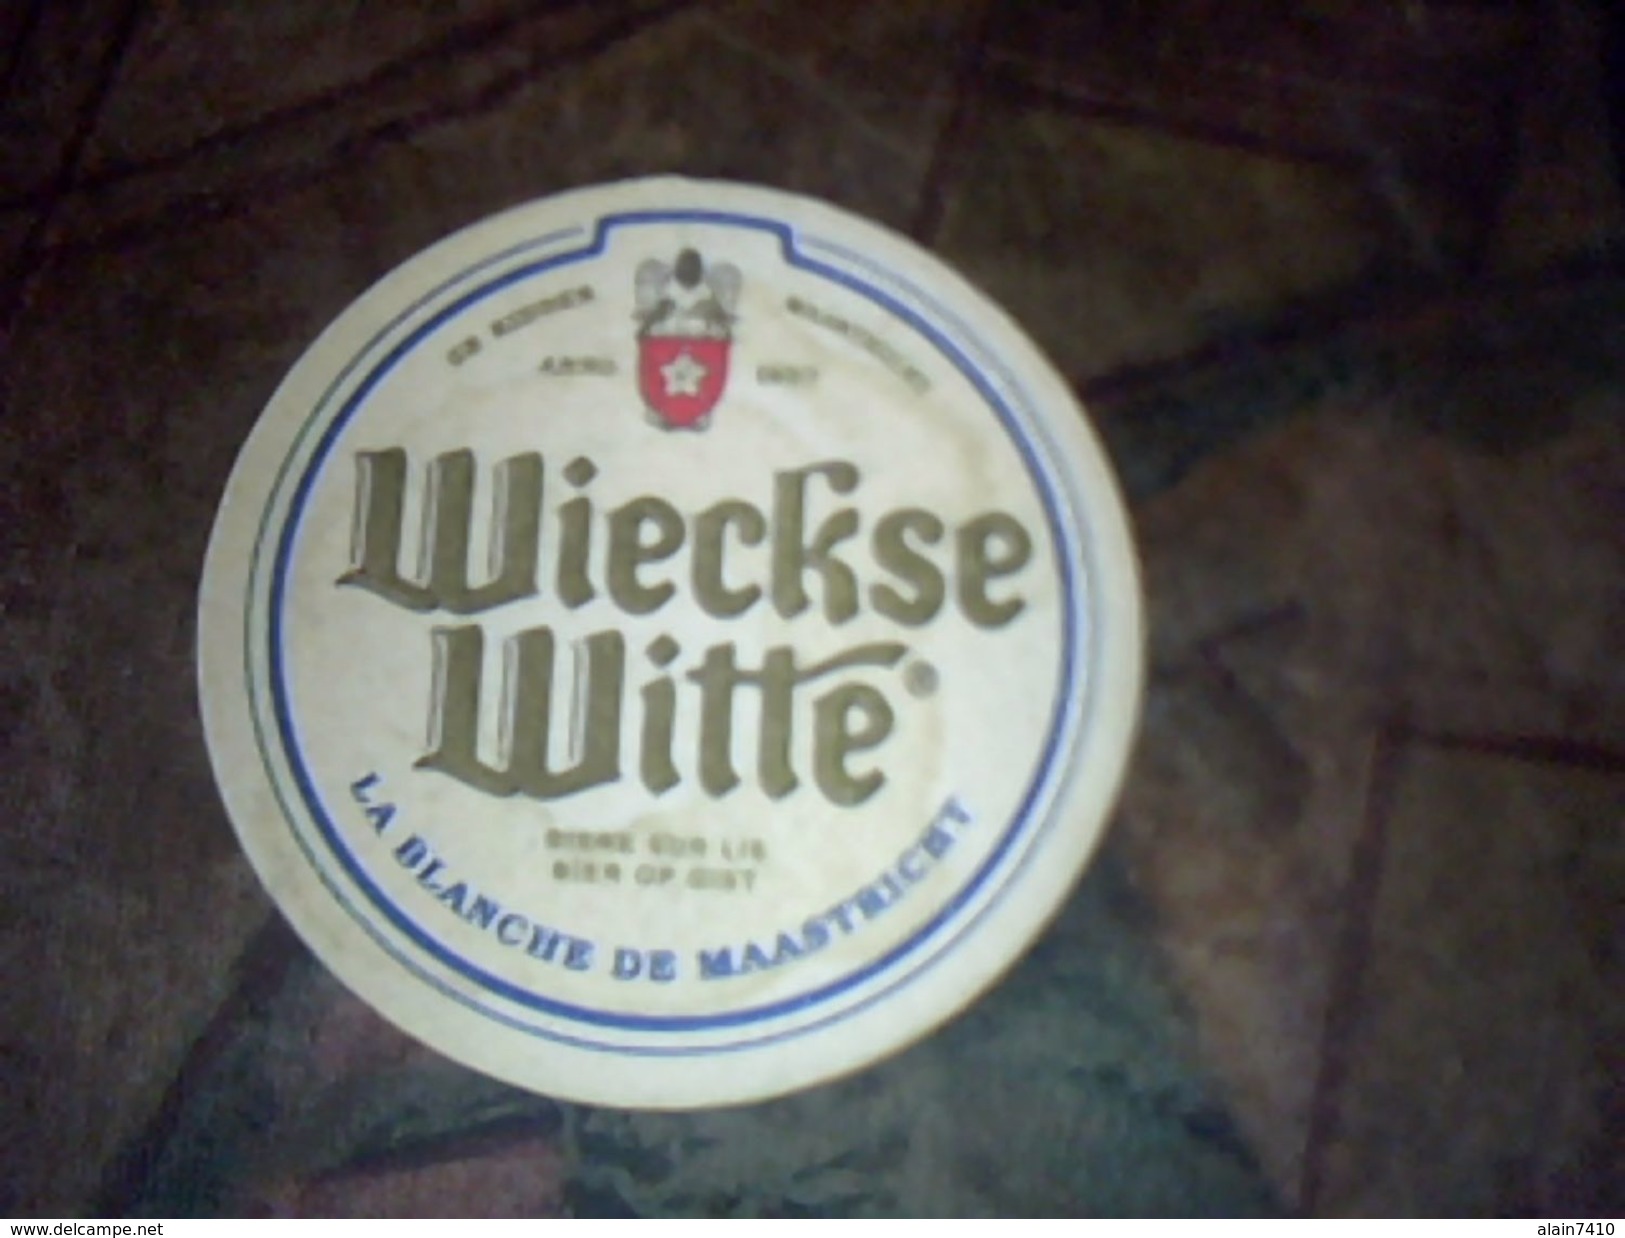 Belgique Sous Bock Bière  Wieckse  Witte 2 Cuvees  Bière Blanche Et Bière Sur Lie - Portavasos